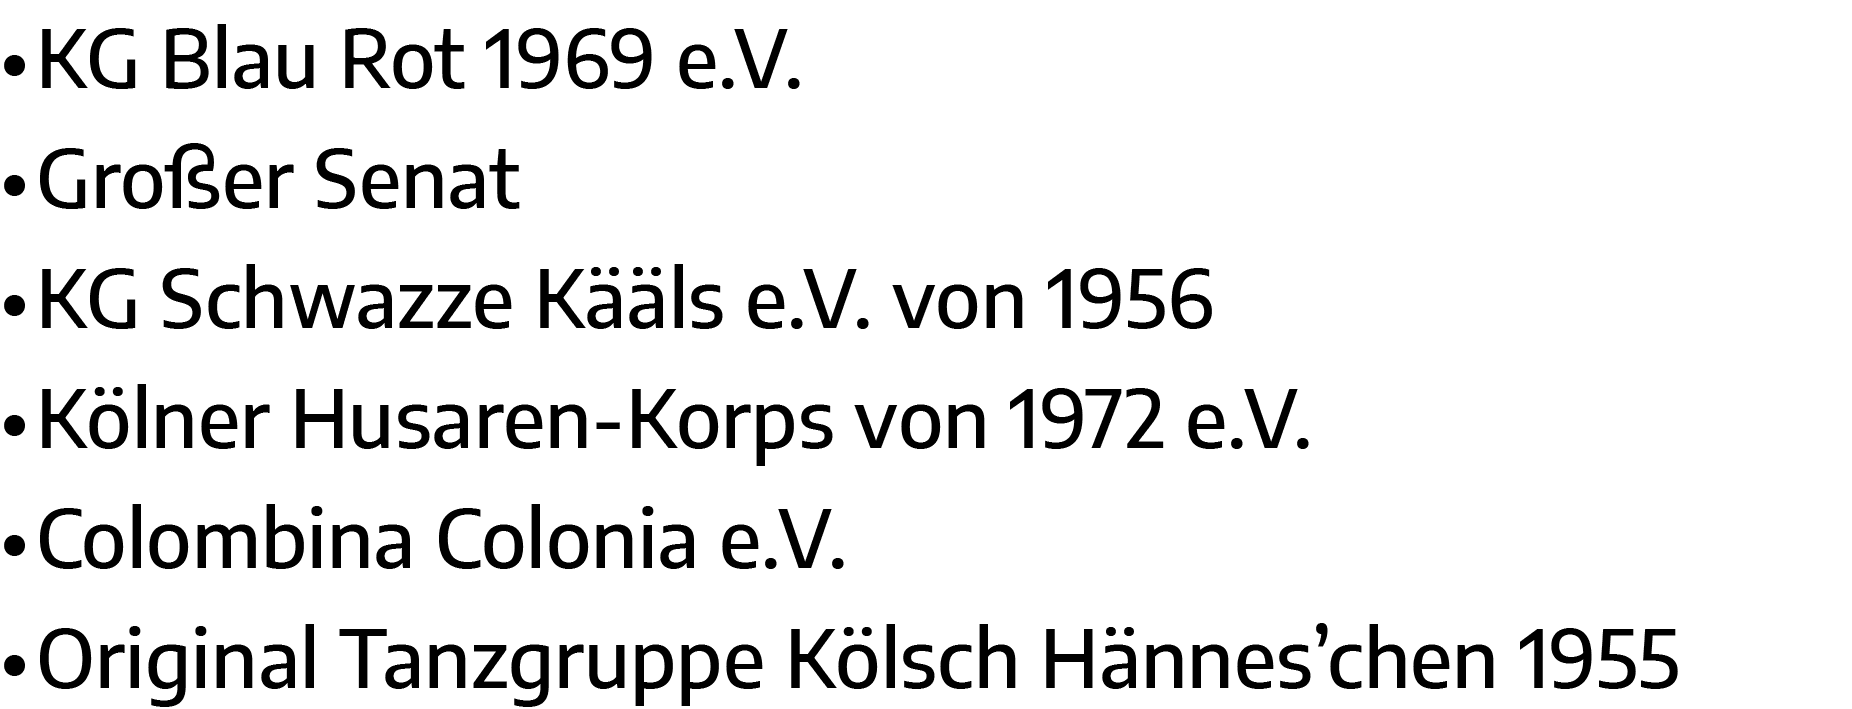   KG Blau Rot 1969 e V    Großer Senat   KG Schwazze Kääls e V  von 1956   Kölner Husaren-Korps von 1972 e V    Colom   